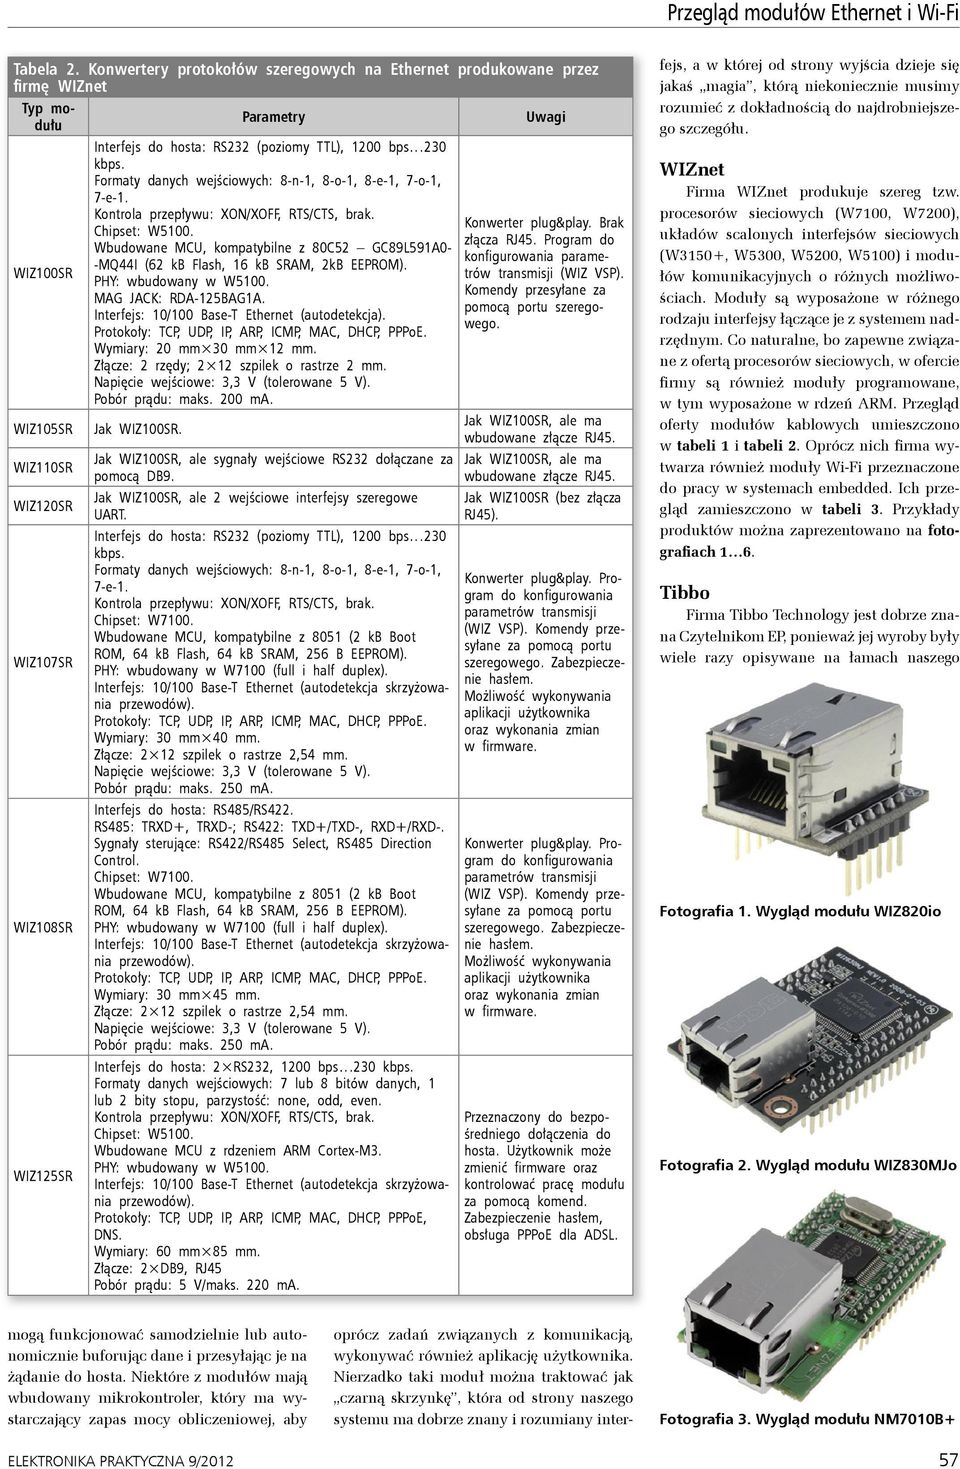 (poziomy TTL), 1200 bps 230 kbps. Formaty danych wejściowych: 8-n-1, 8-o-1, 8-e-1, 7-o-1, 7-e-1. Wbudowane MCU, kompatybilne z 80C52 GC89L591A0- -MQ44I (62 kb Flash, 16 kb SRAM, 2kB EEPROM).